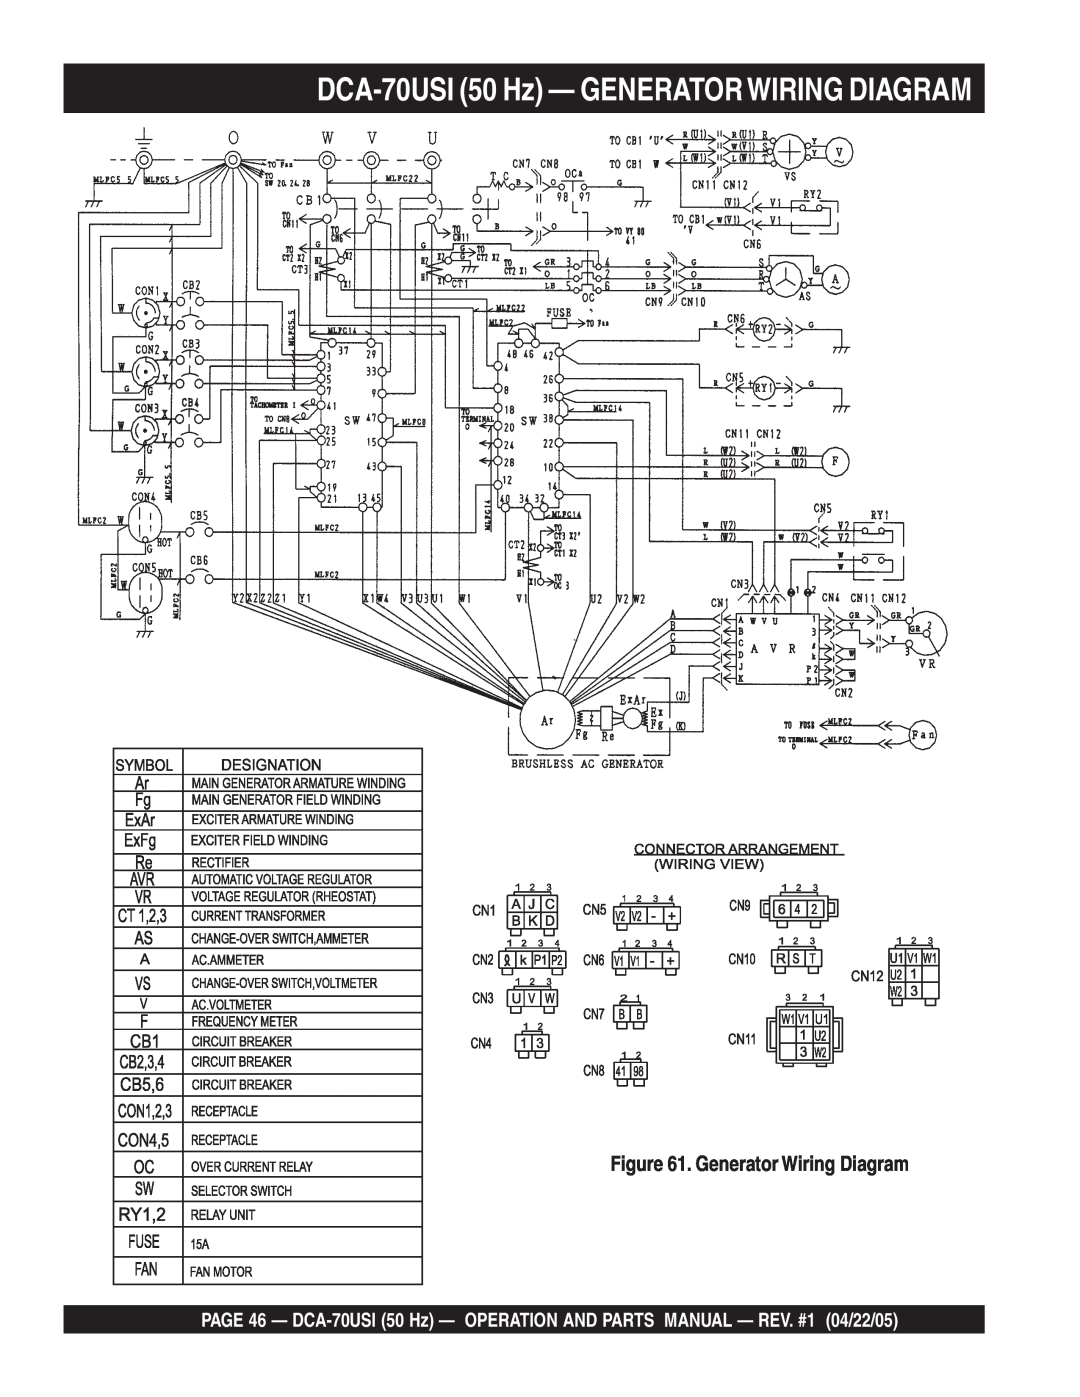 Multiquip operation manual DCA-70USI50 Hz — GENERATORWIRING DIAGRAM, Generator Wiring Diagram 